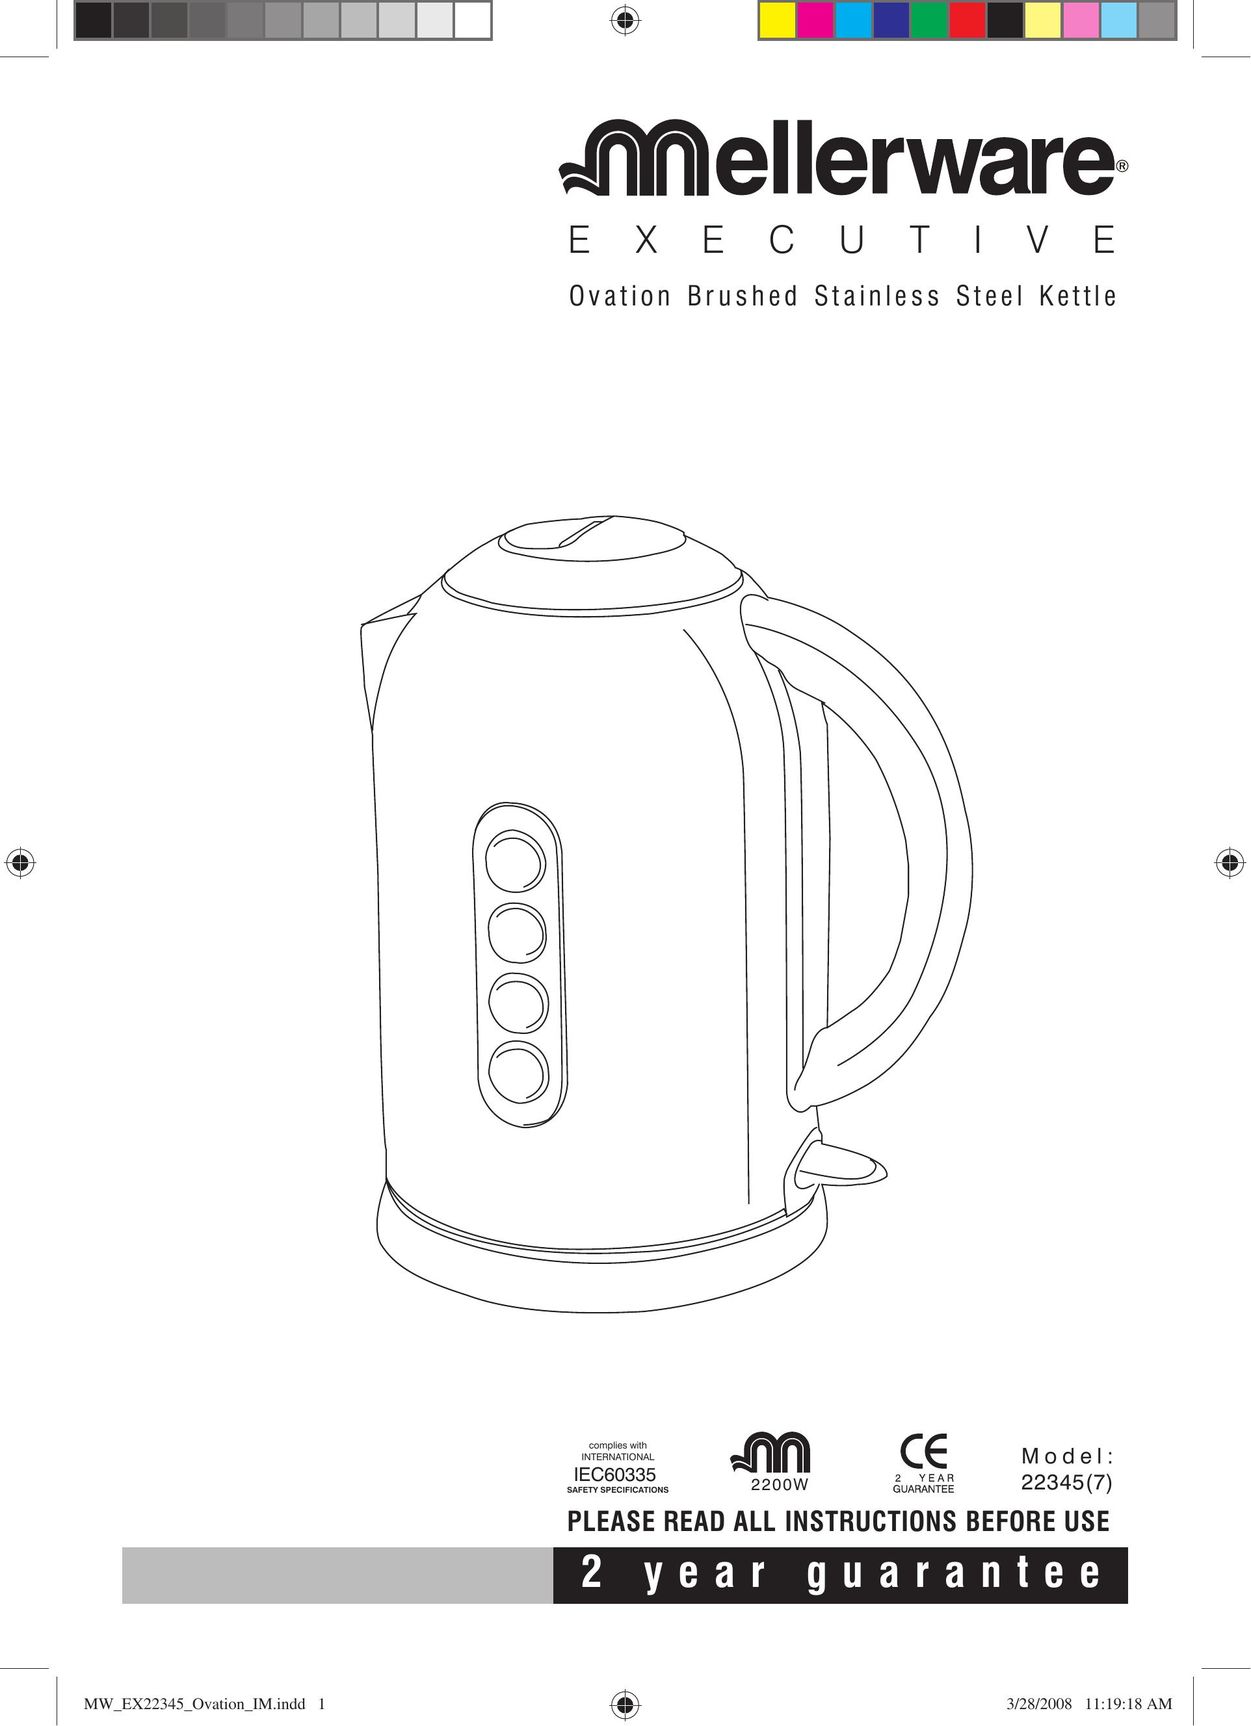 Mellerware 22345(7) Hot Beverage Maker User Manual